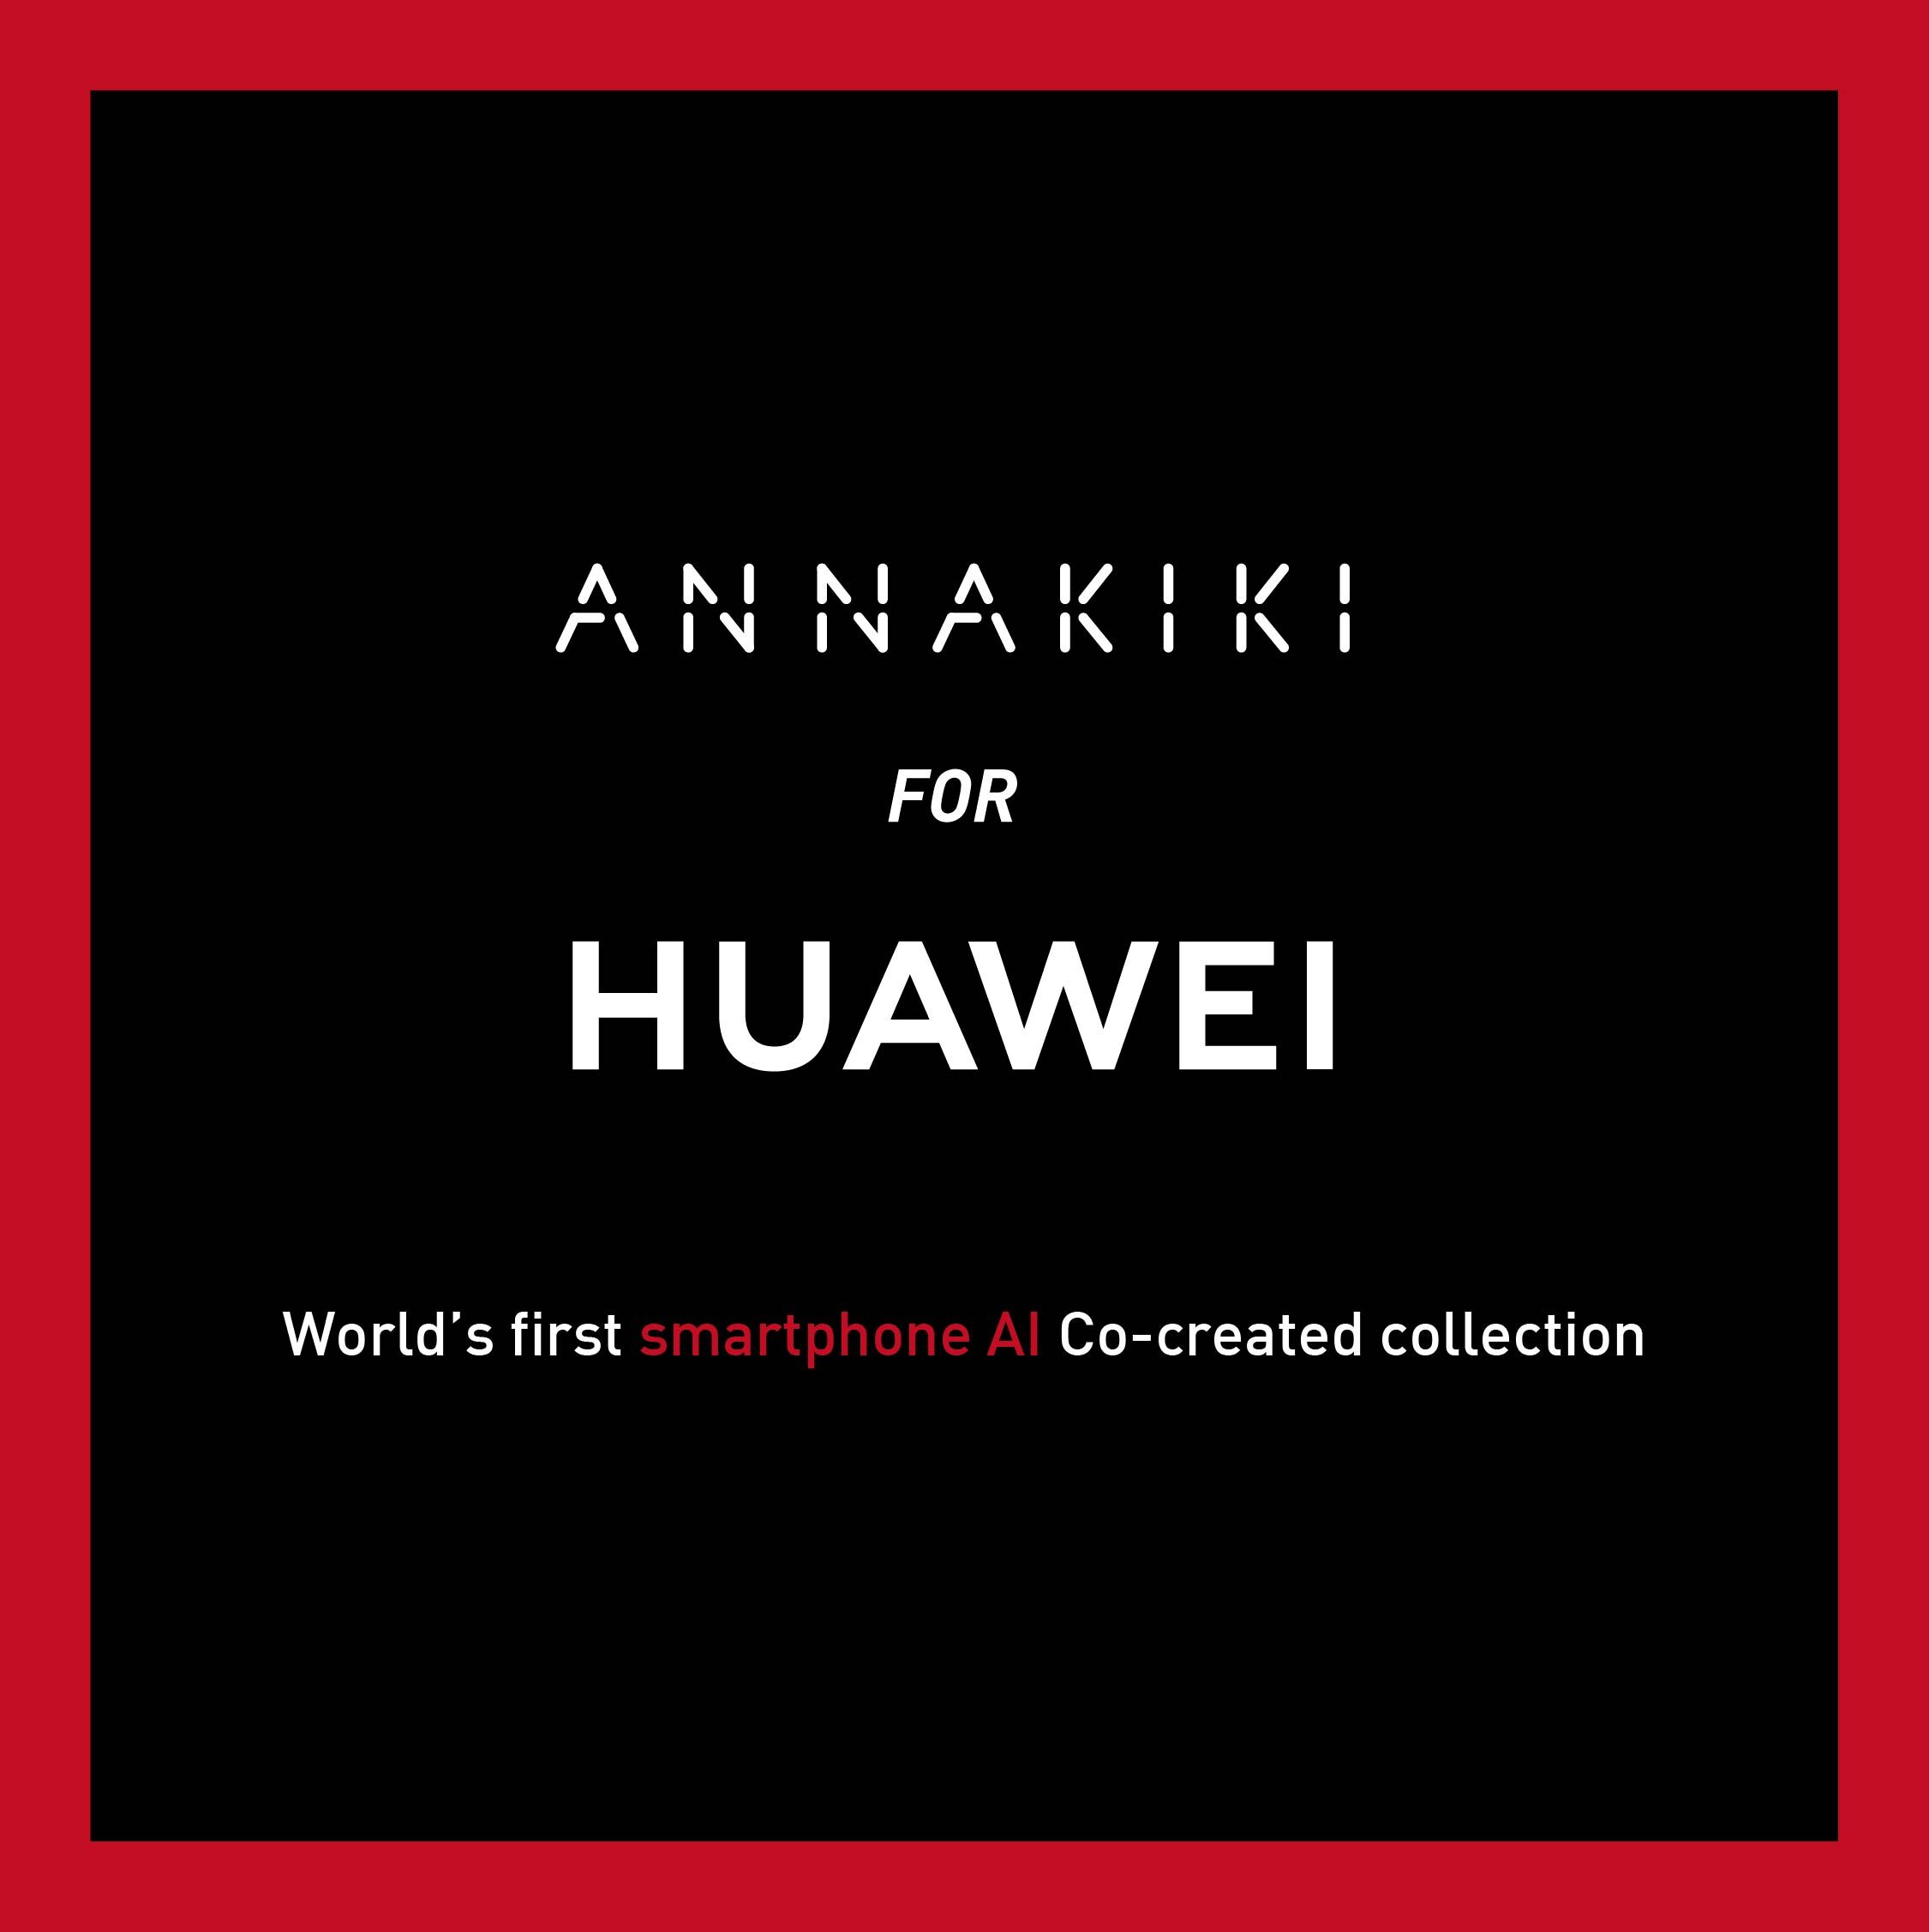 1、ANNAKIKI FOR HUAWEI “Fashion Flair”.jpg